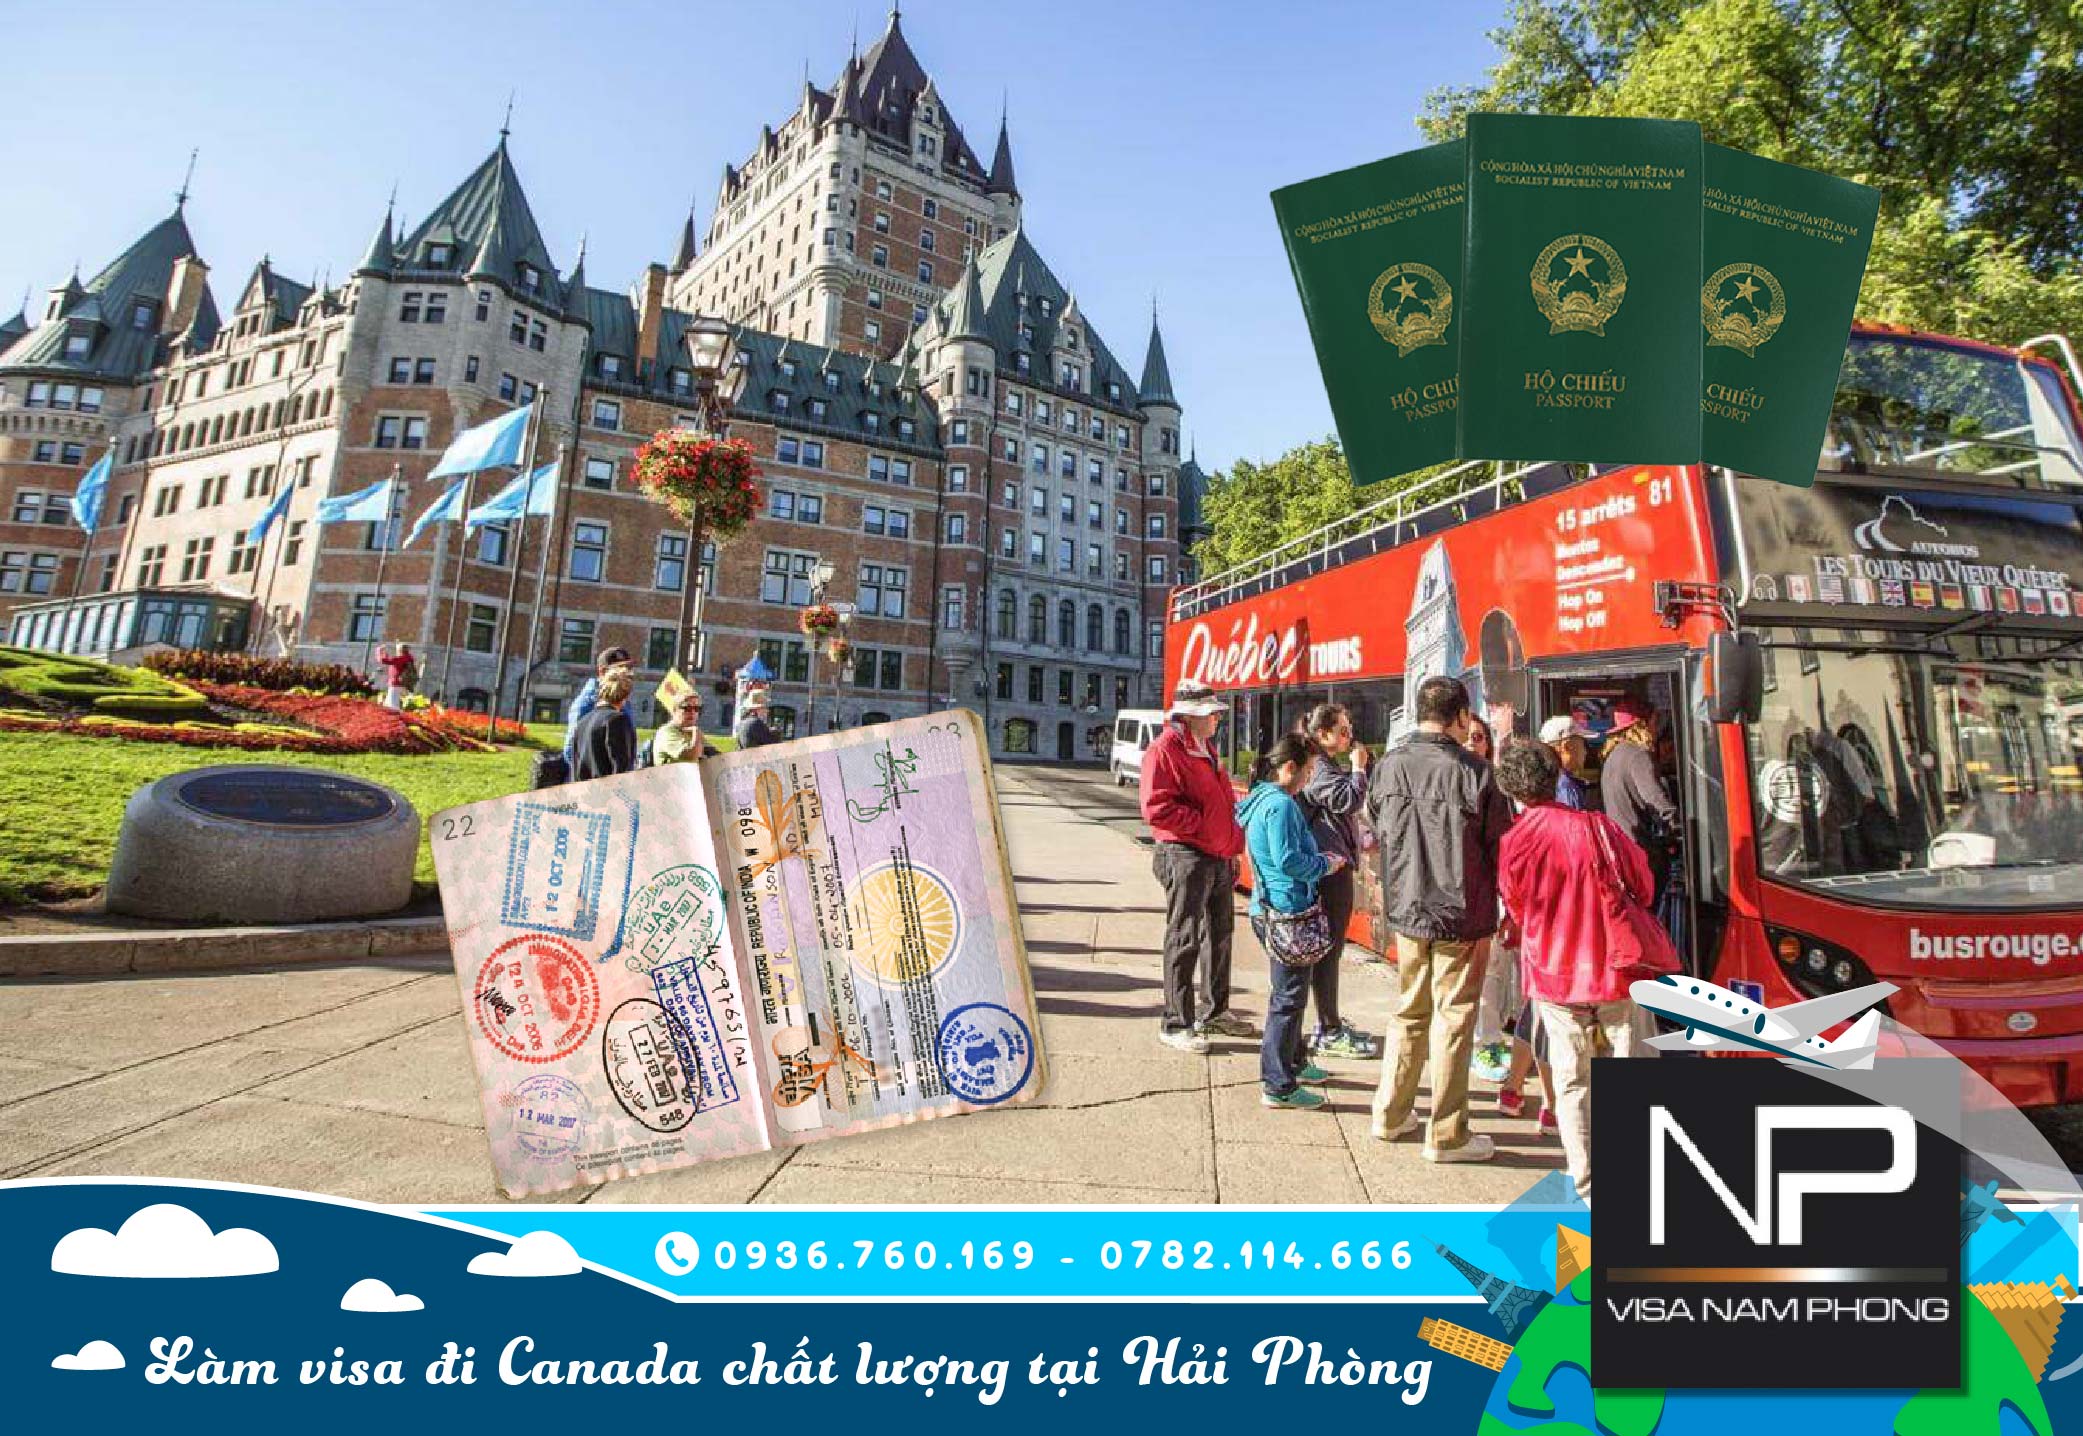 Làm visa đi Canada chất lượng tại Hải Phòng